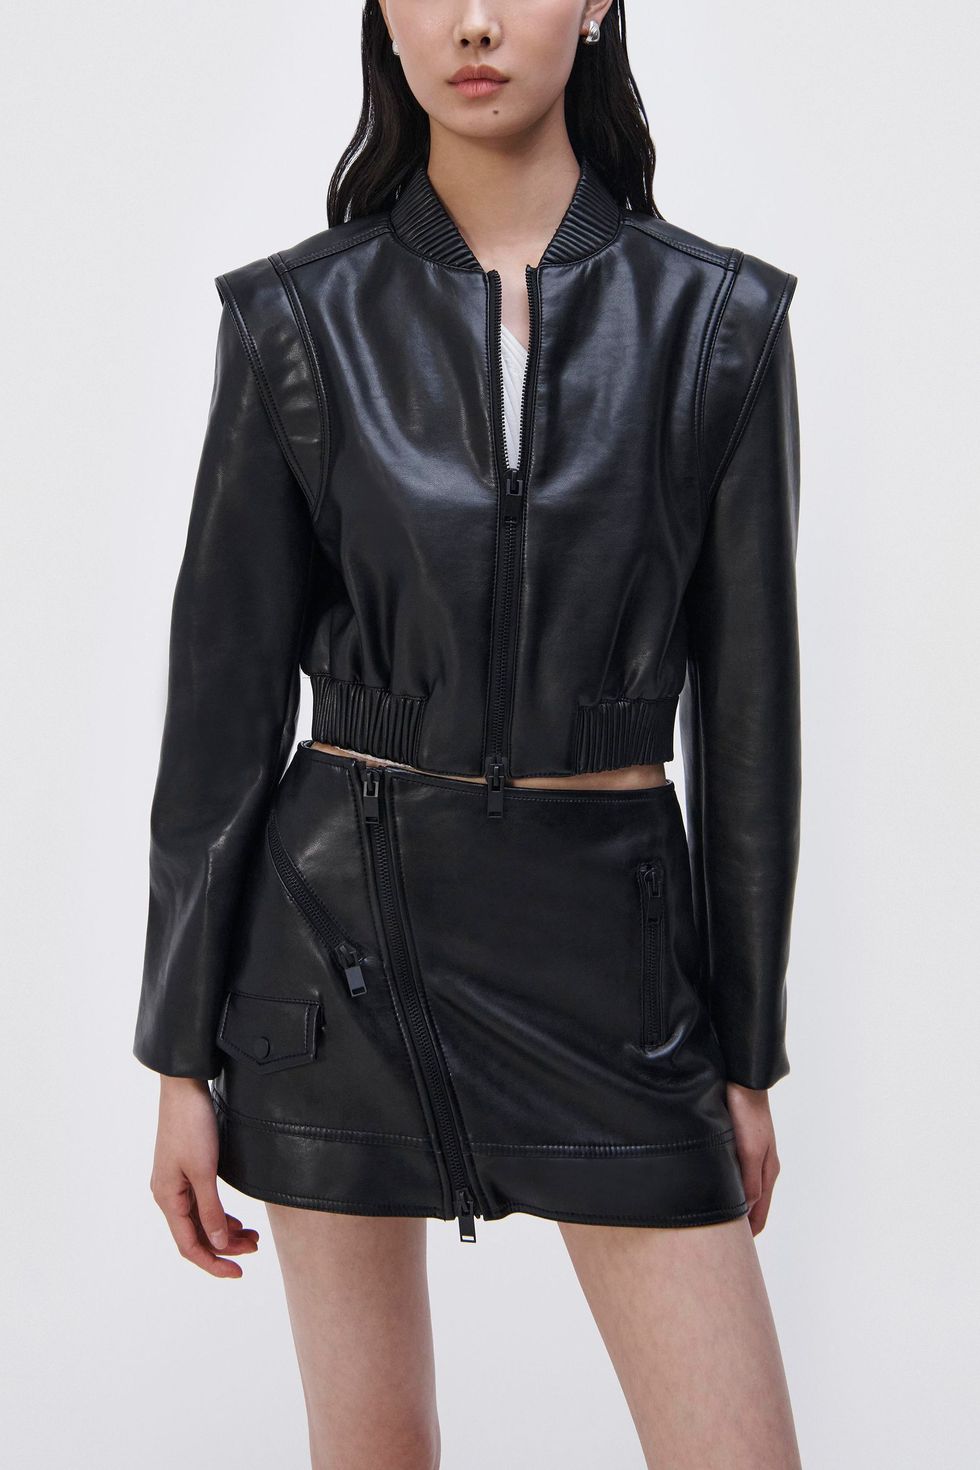 20 Best Leather Jackets for Women 2023 – WWD